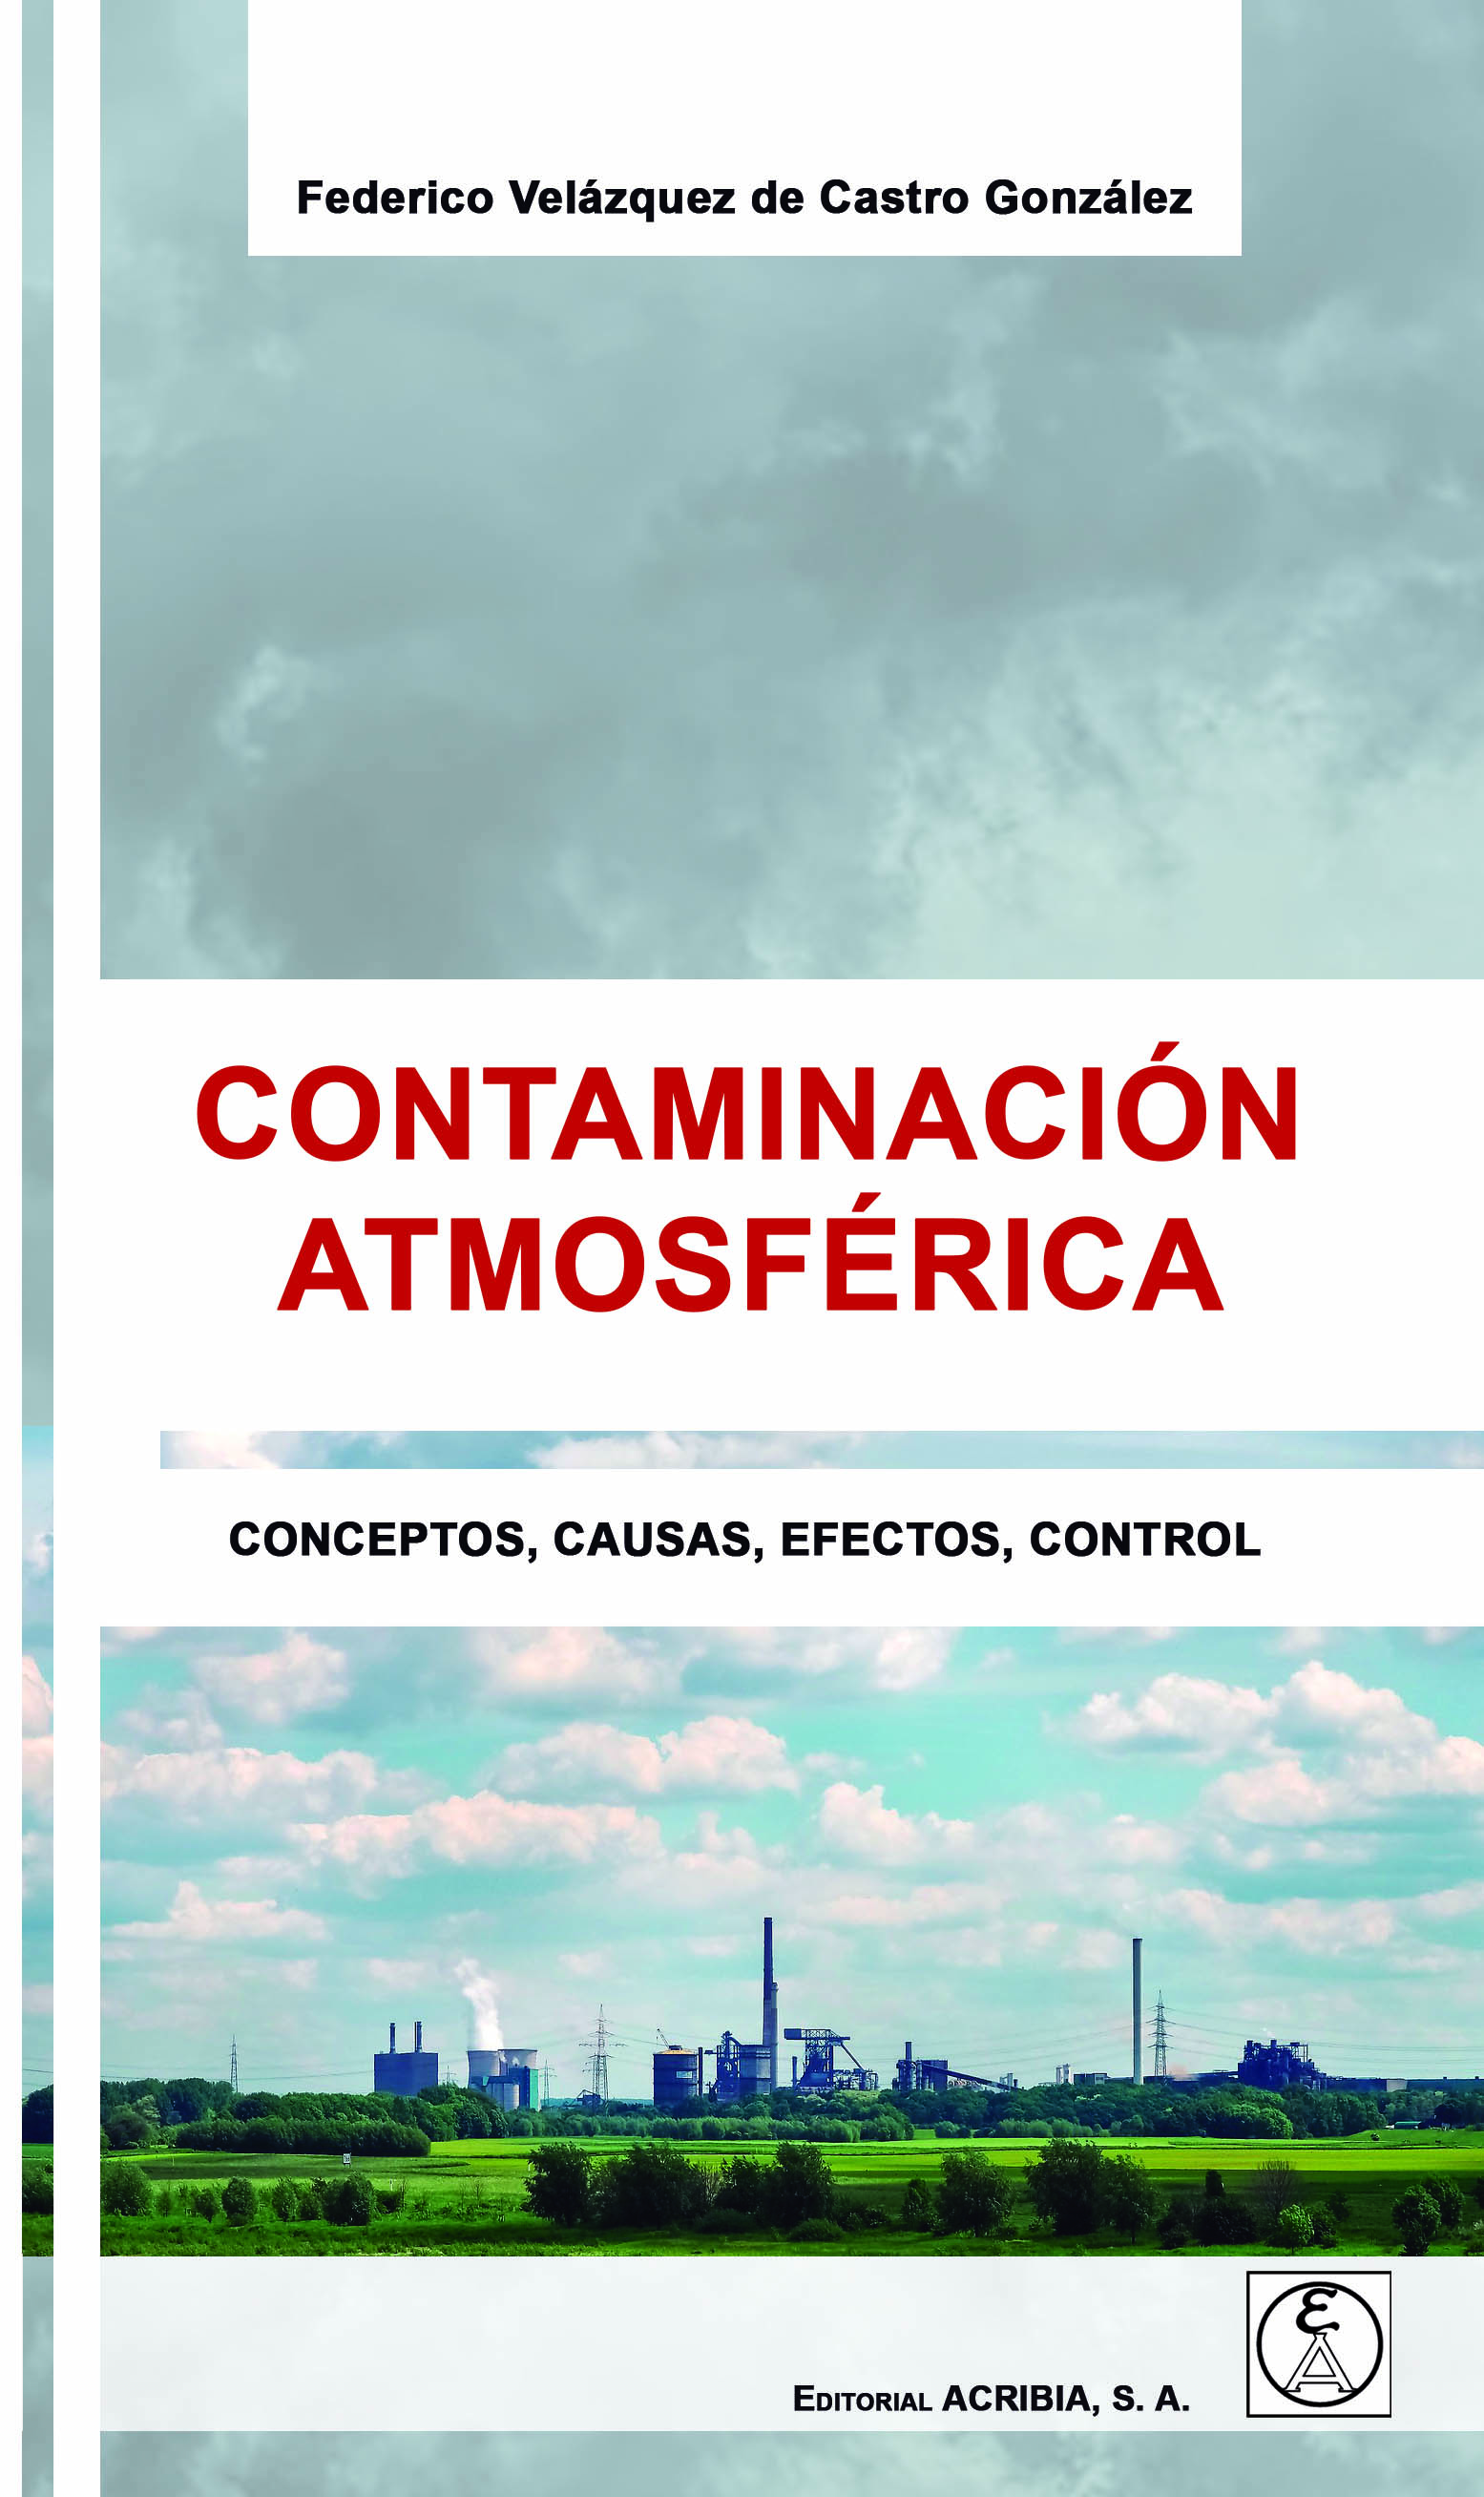 Contaminación atmosférica. Conceptos, causas, efectos, control - Editorial  Acribia, .